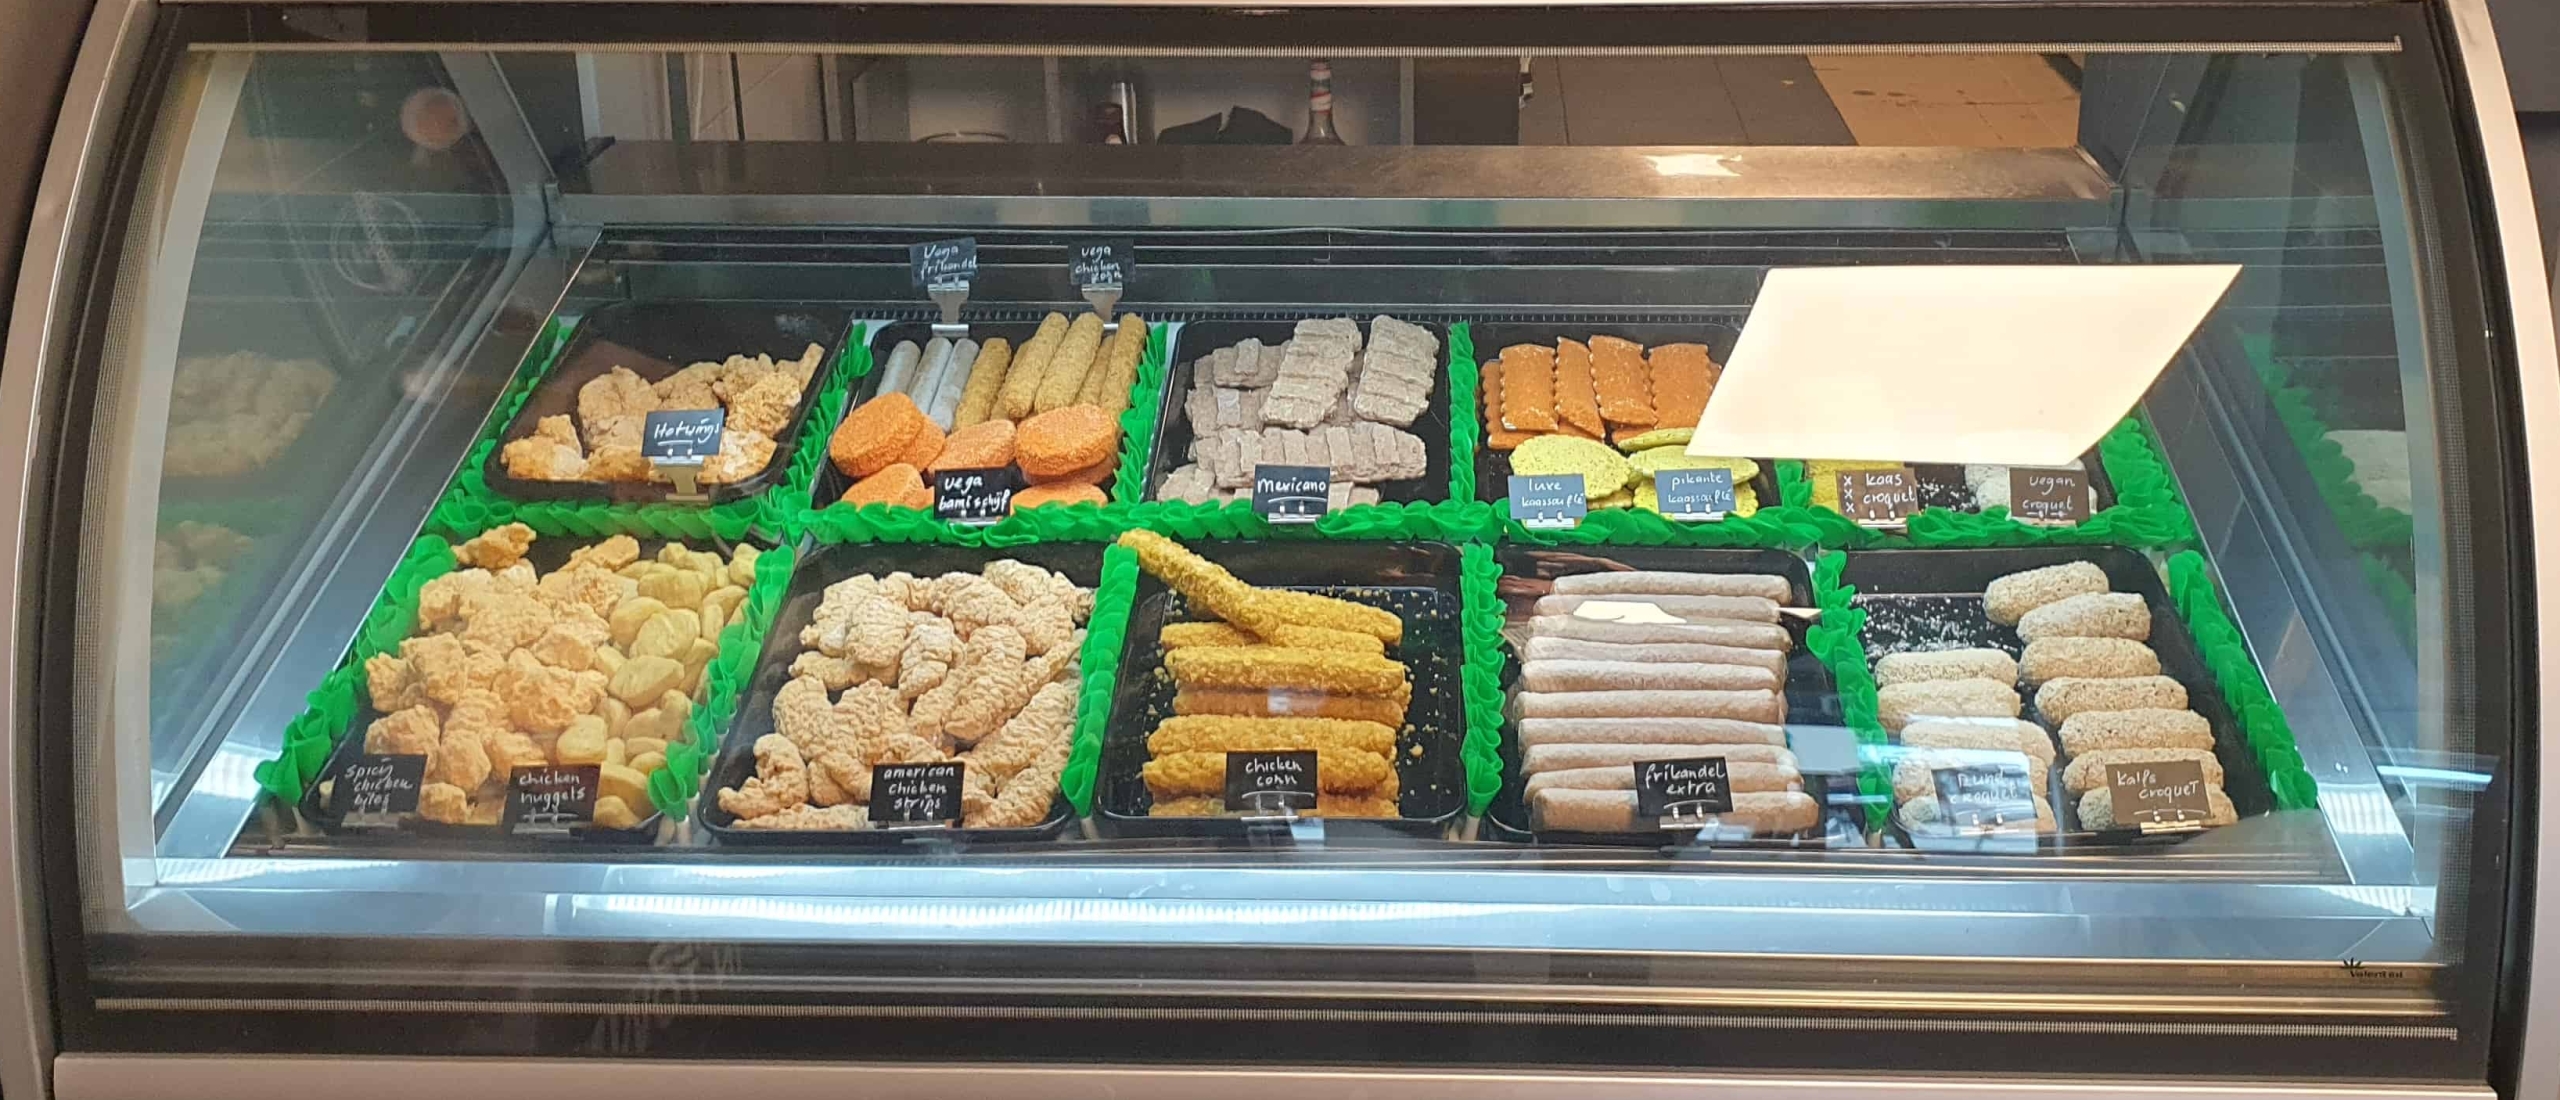 Koolhydraatarme Opties in de Snackbar: Welke Snacks Kun je Kiezen?